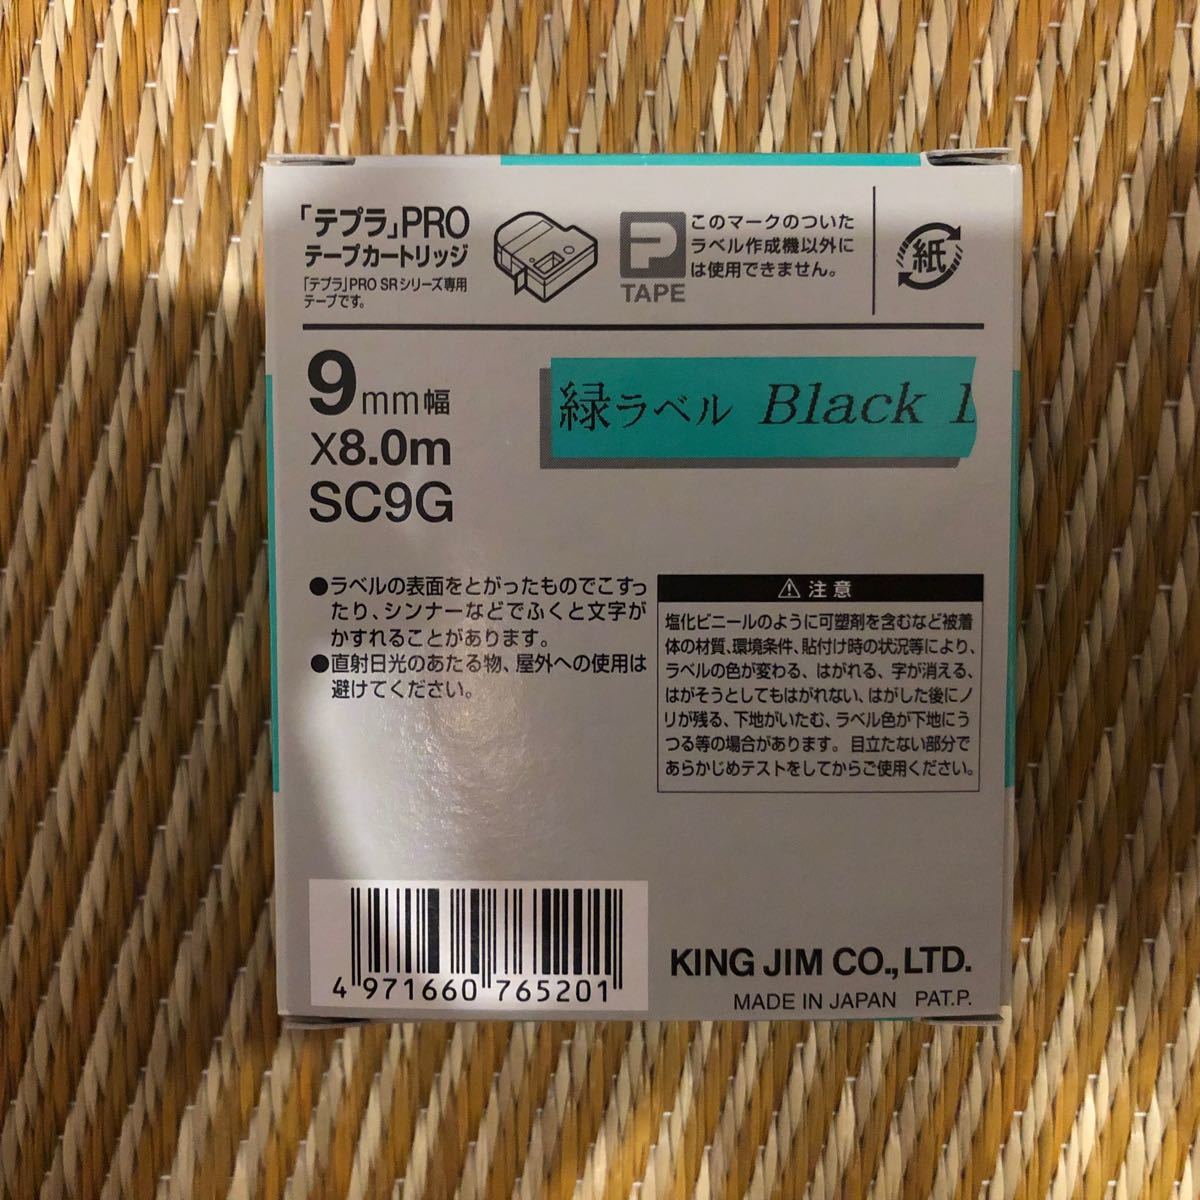 「テプラ」PROテープカートリッジ SC9G 9mm （パステル・緑・黒文字）1個